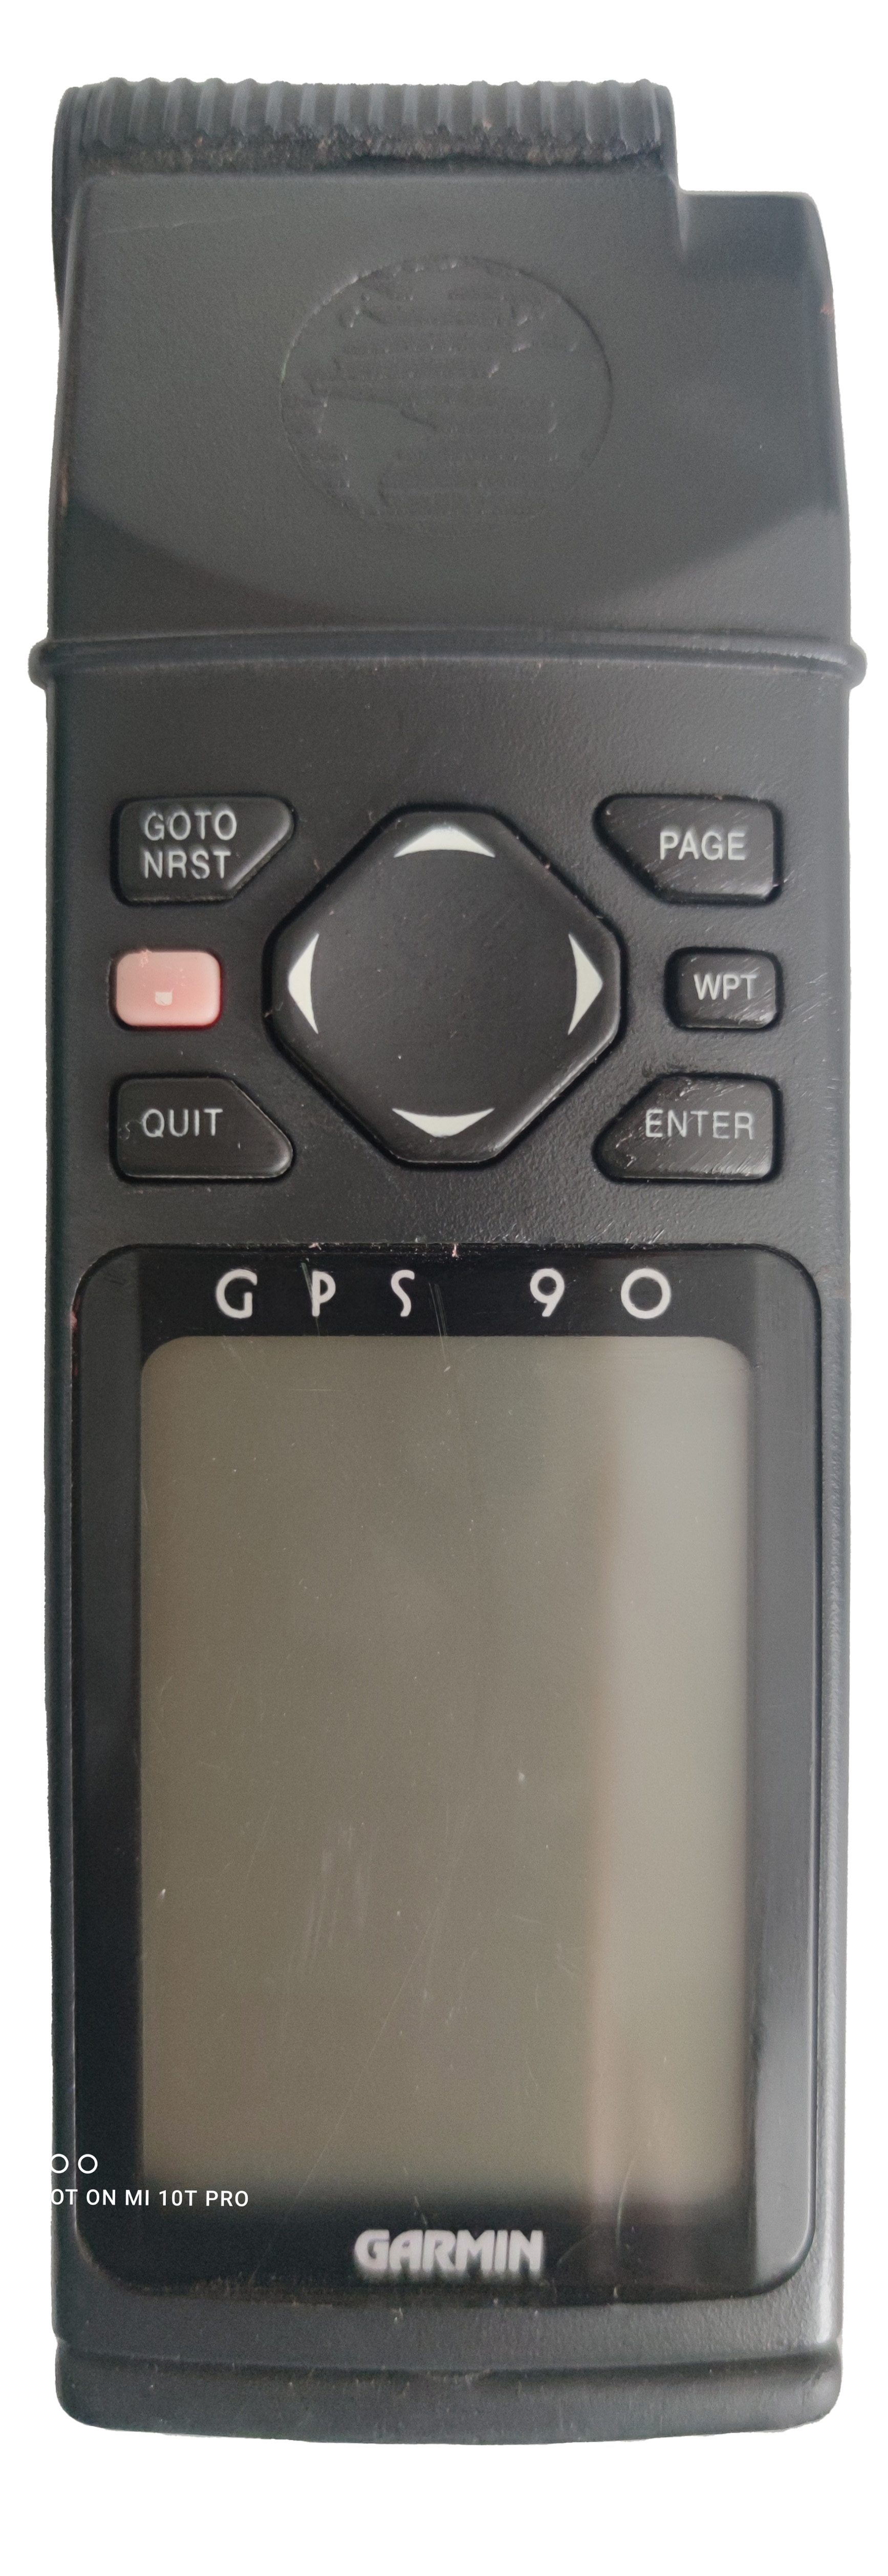 Авиационный навигатор Garmin GPS 90